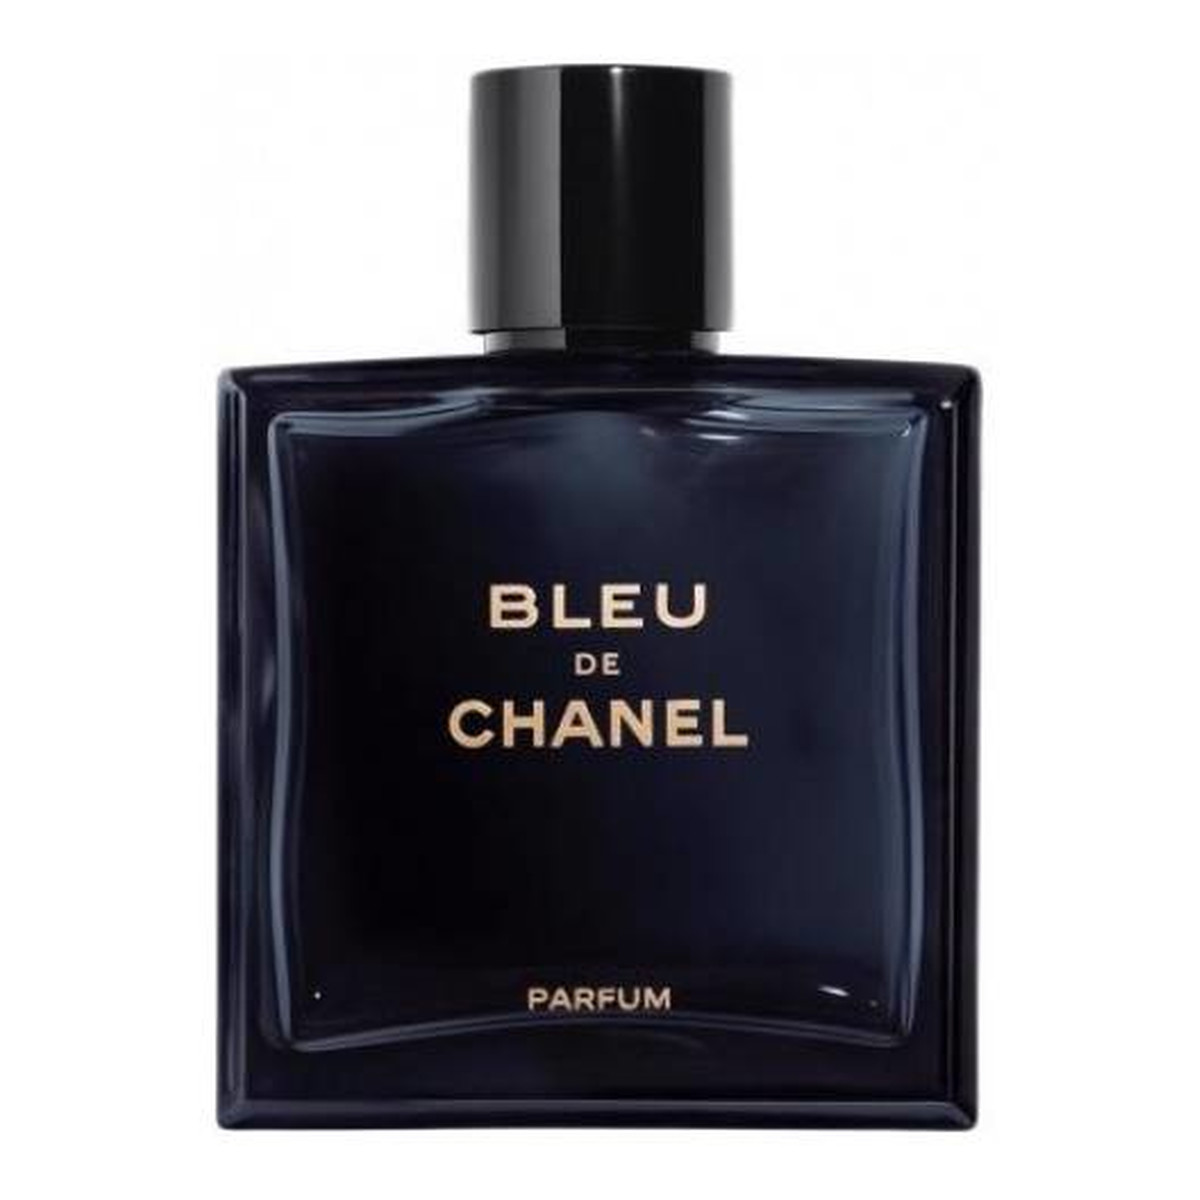 Chanel Bleu de Chanel Perfumy spray 150ml